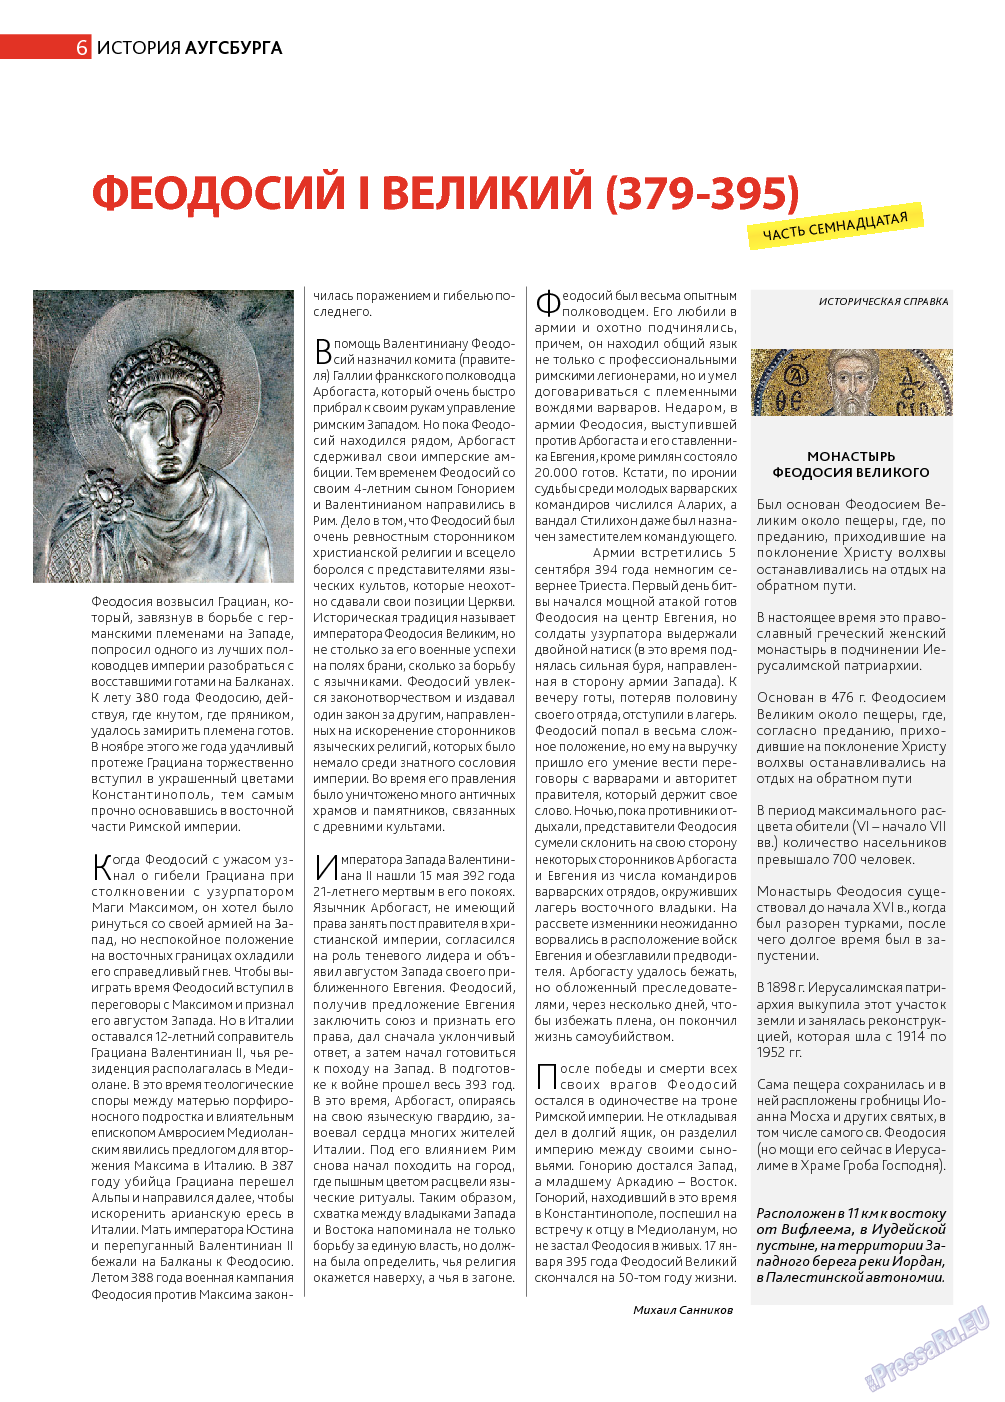 Афиша Augsburg (журнал). 2013 год, номер 9, стр. 6